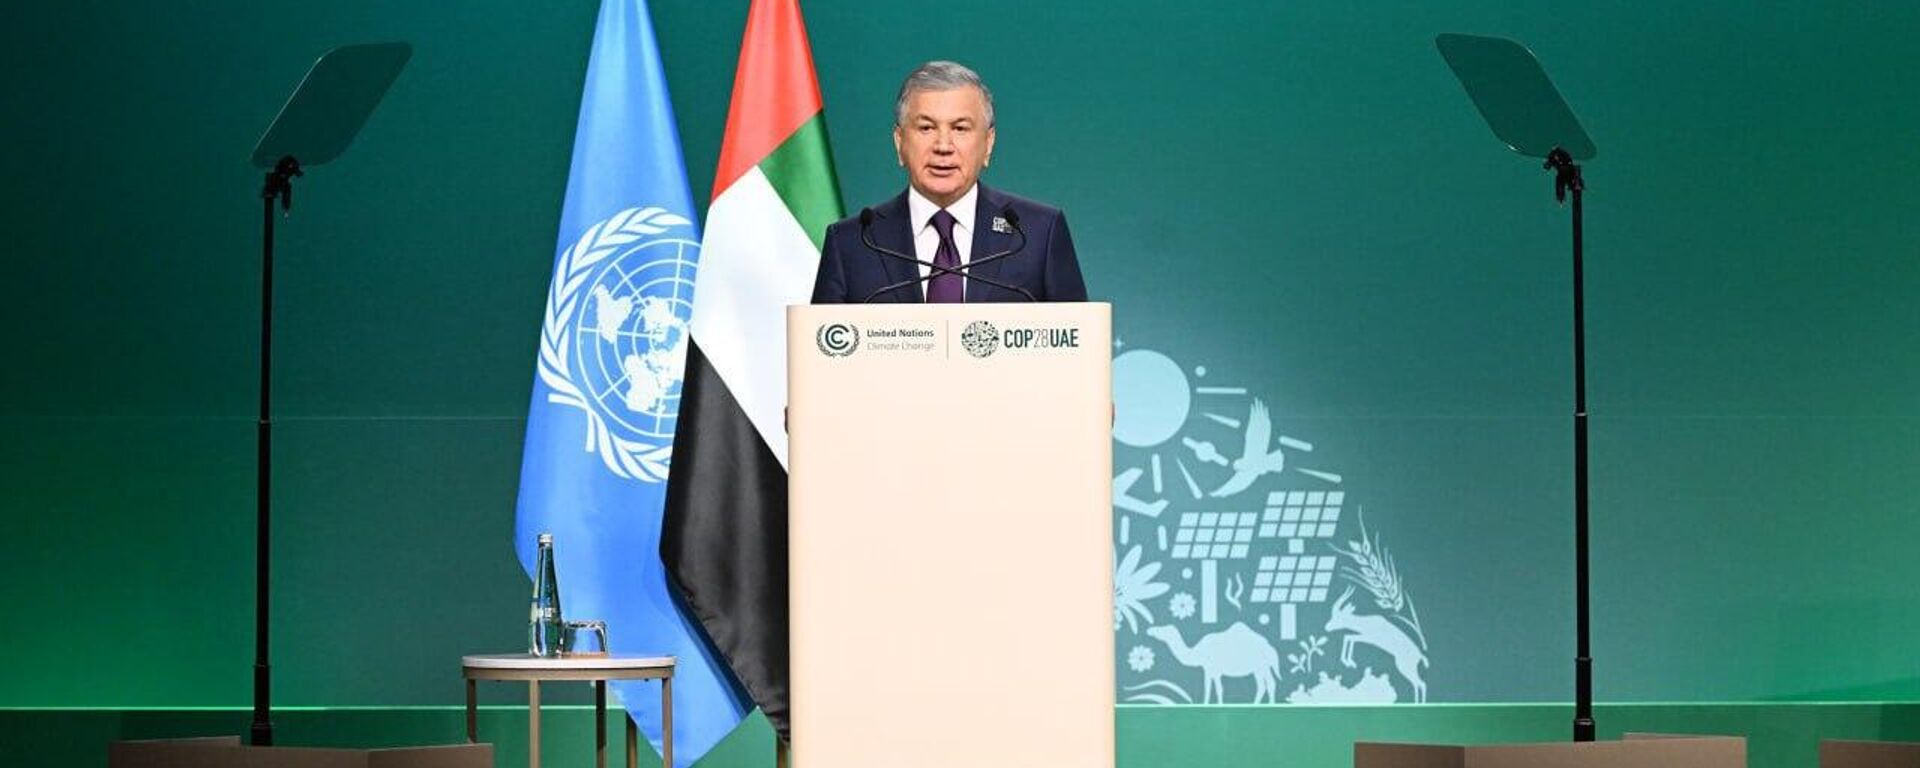 Шавкат Мирзиёев принял участие в работе основной пленарной сессии Конференции ООН по изменению климата (СОР28) в Дубае. - Sputnik Узбекистан, 1920, 02.12.2023